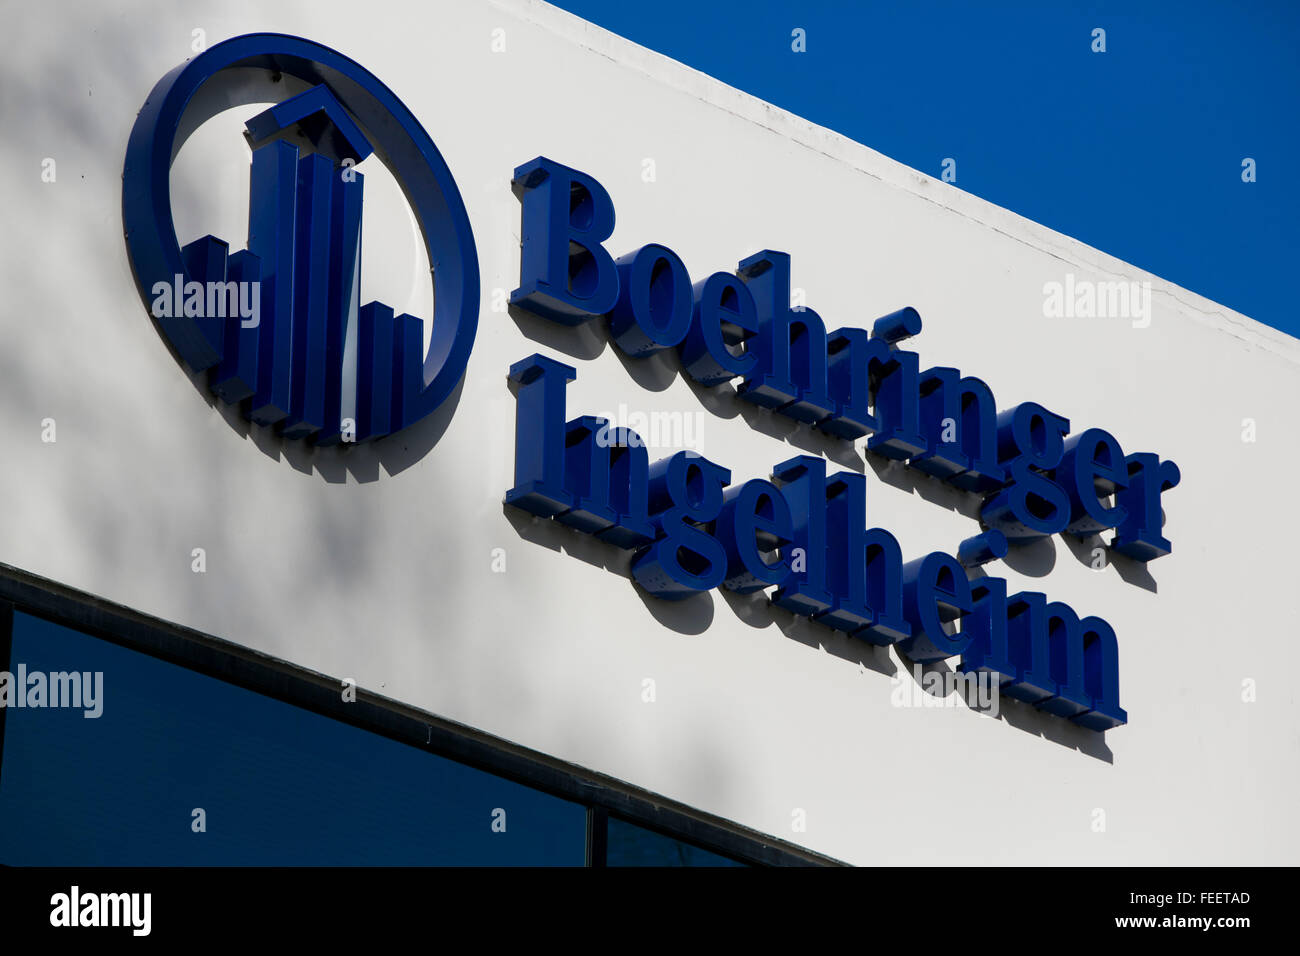 Un segno del logo al di fuori di una struttura occupata dalla Boehringer Ingelheim in Fremont, California il 23 gennaio 2016. Foto Stock